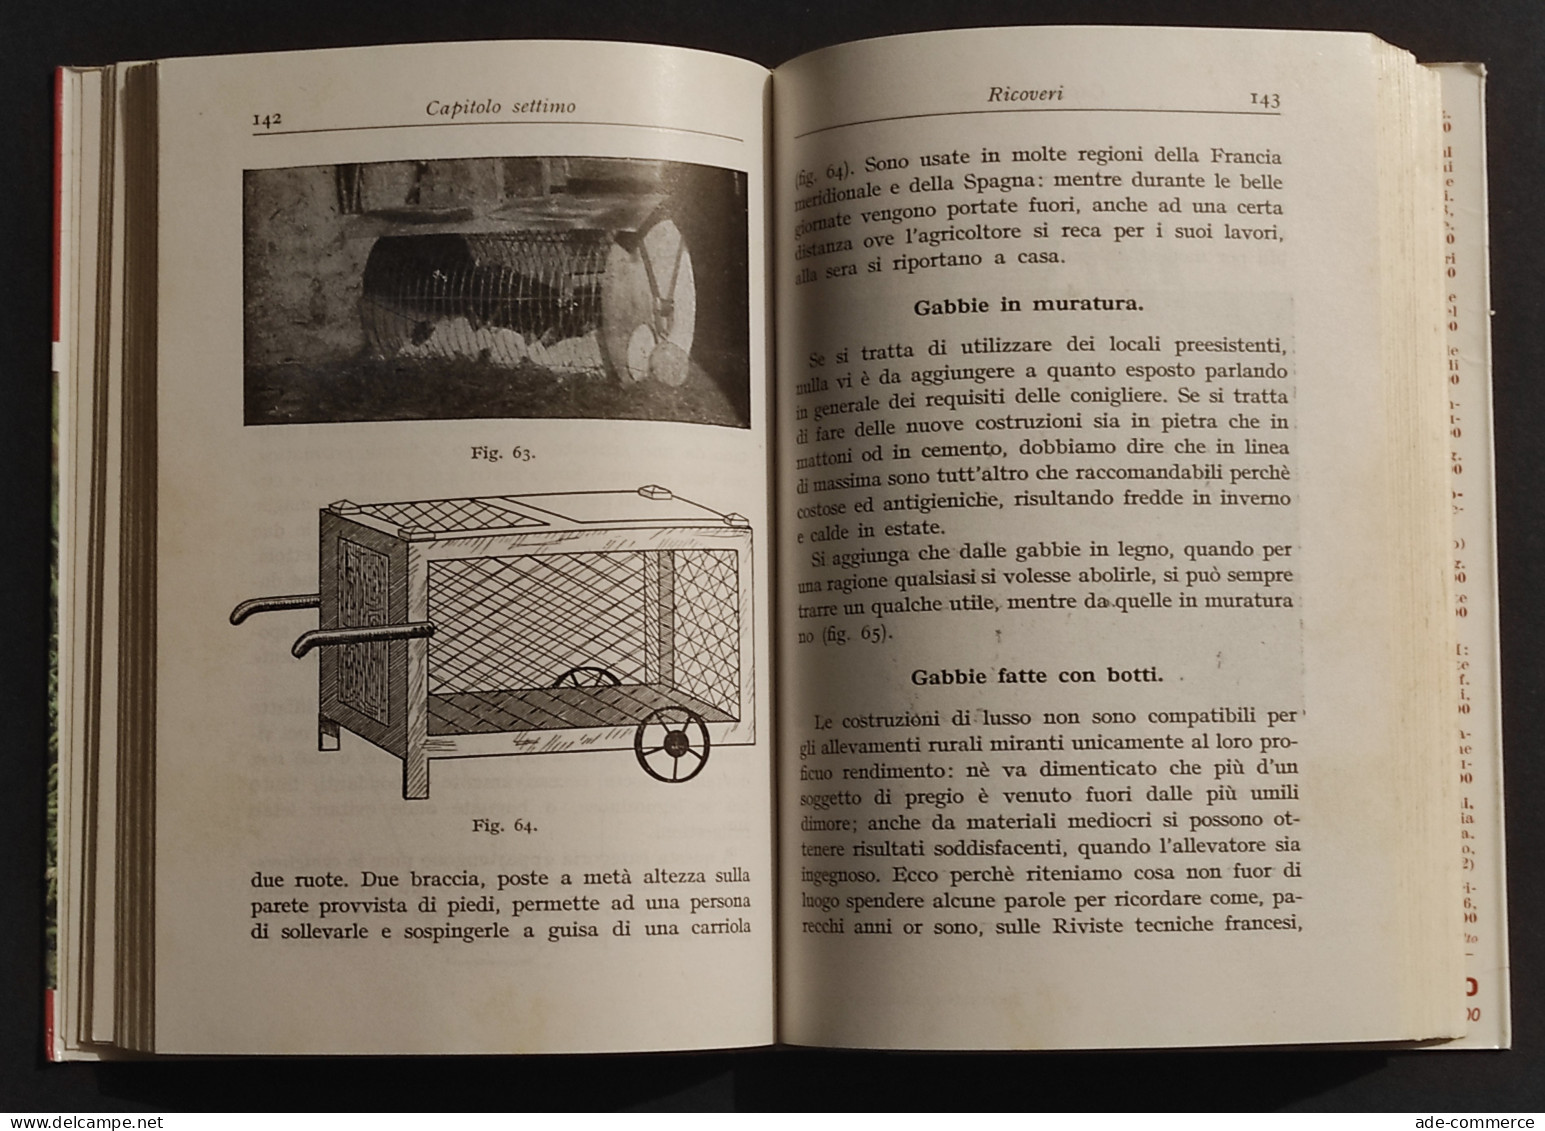 Coniglicoltura Pratica -  G. Licciardelli - M. Cortese - Ed. Hoepli - 1962 - Gezelschapsdieren